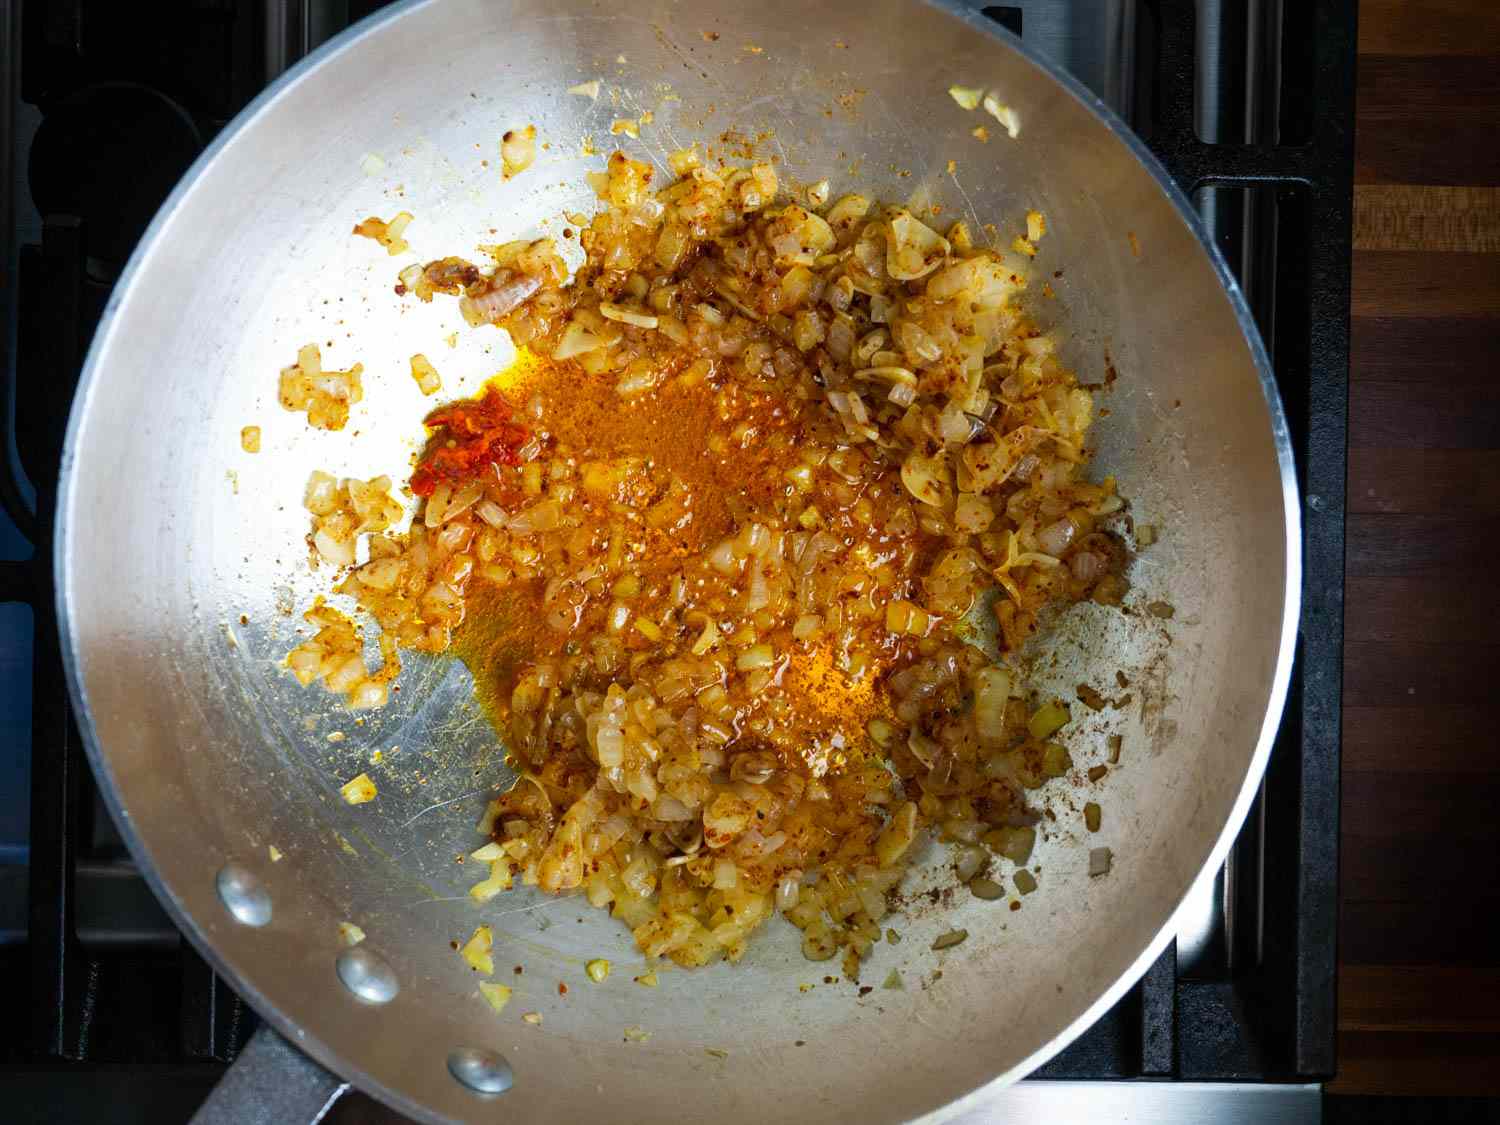 洋葱丁sautéing在锅中加入橄榄油，由于大量的辣椒而染成深橙色，如果所有使用的辣椒都是辣的，这是不可能的(或明智的)